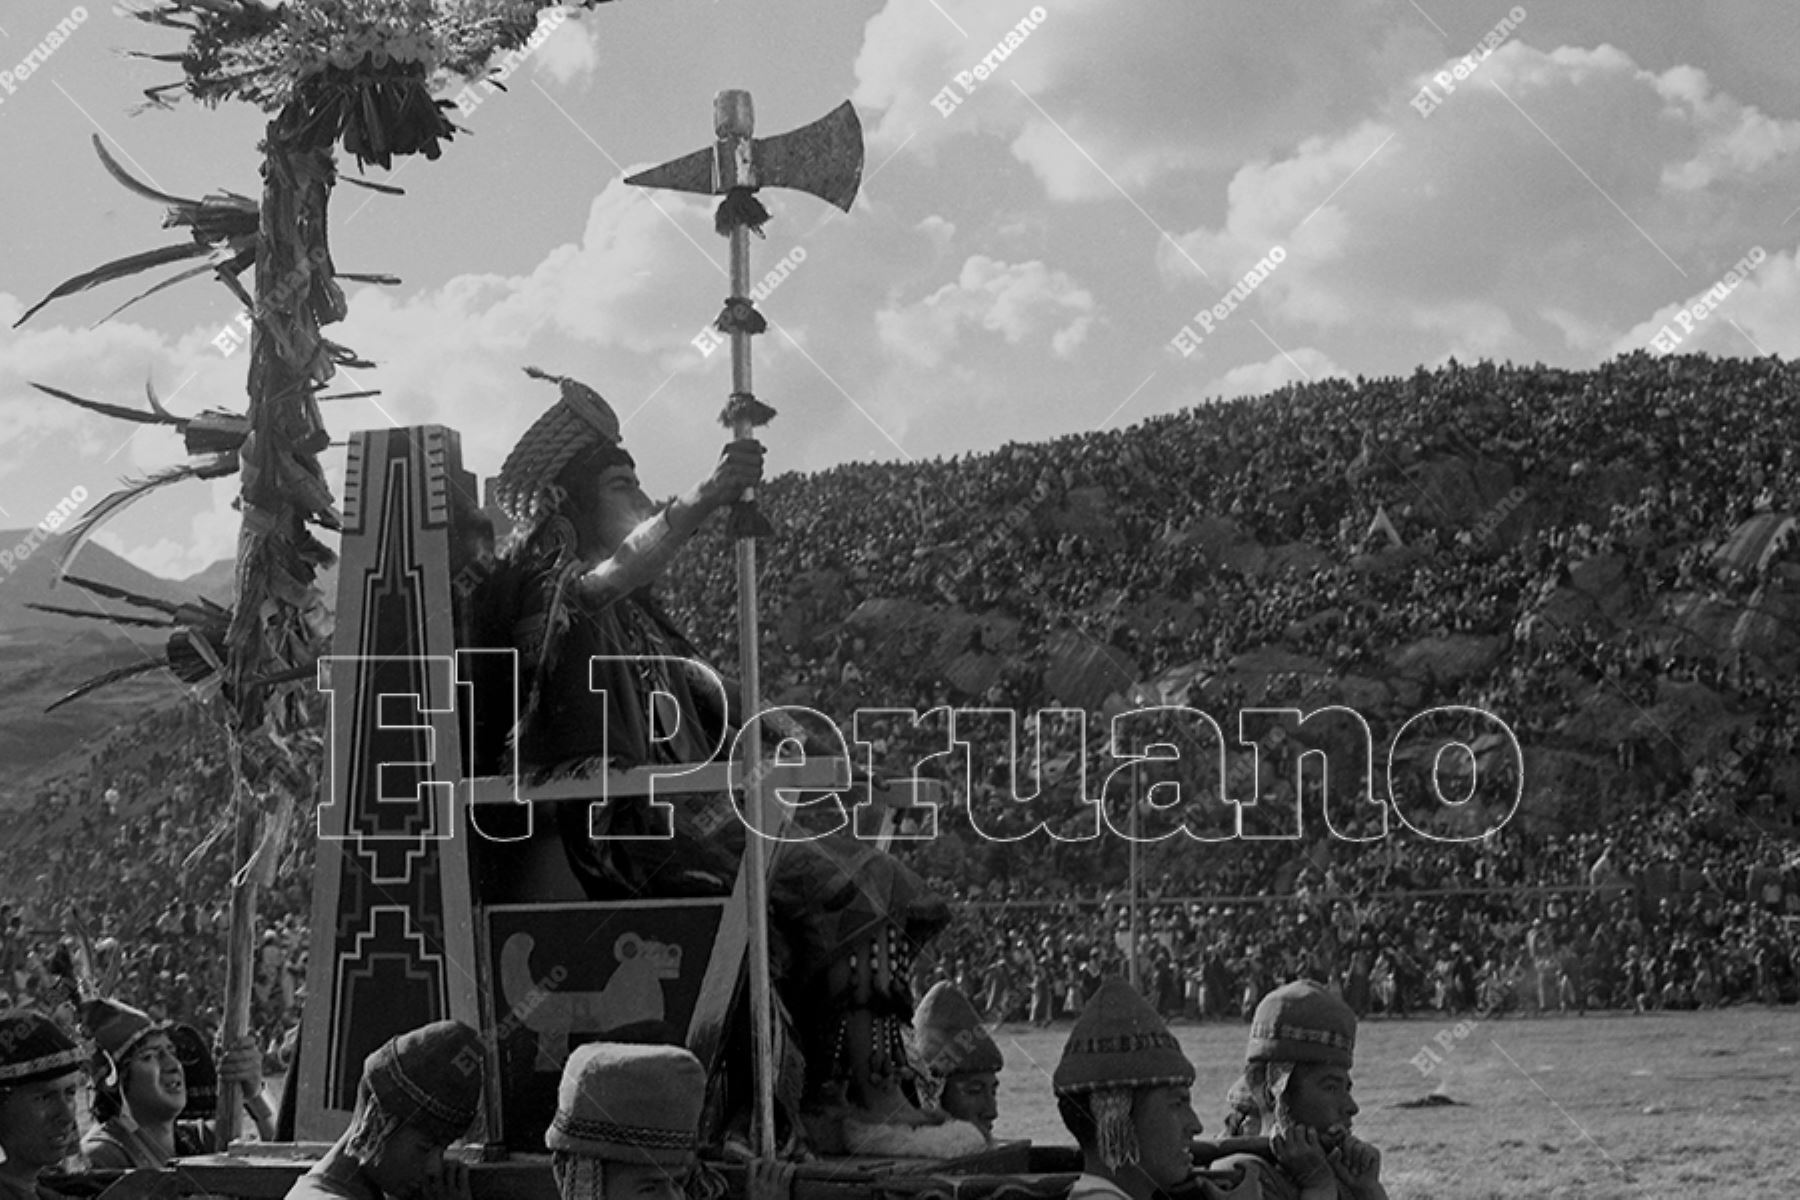 Cusco - 24 junio 1975 / Celebración del Inti Raymi o Fiesta del Sol en la explanada de la fortaleza de Sacsayhuamán. Foto: Archivo Histórico de El Peruano / Oswaldo Sánchez